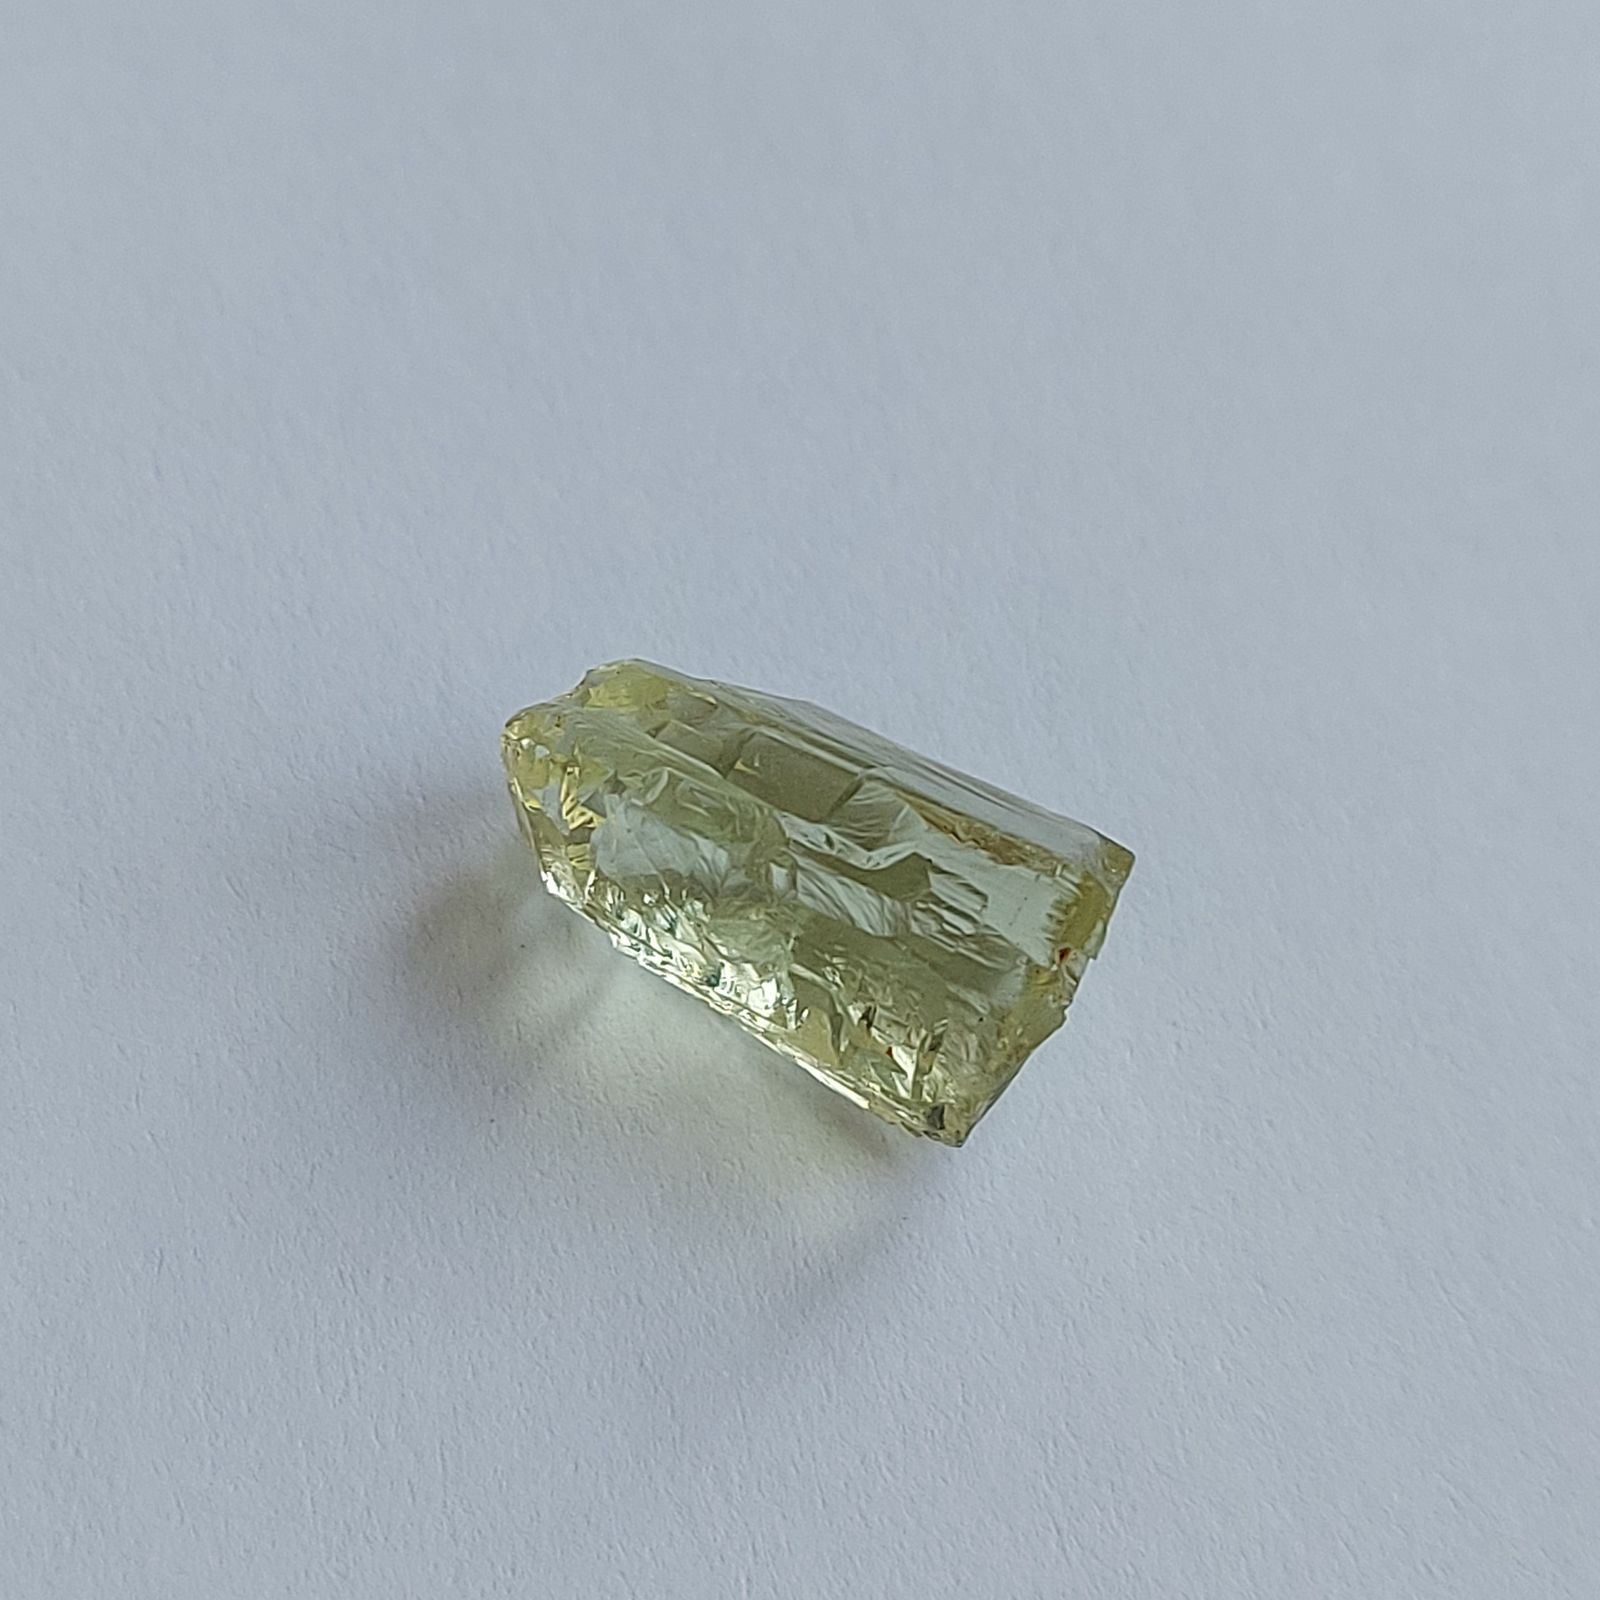 Берилл Гелиодор природный кристалл 6,77 карат